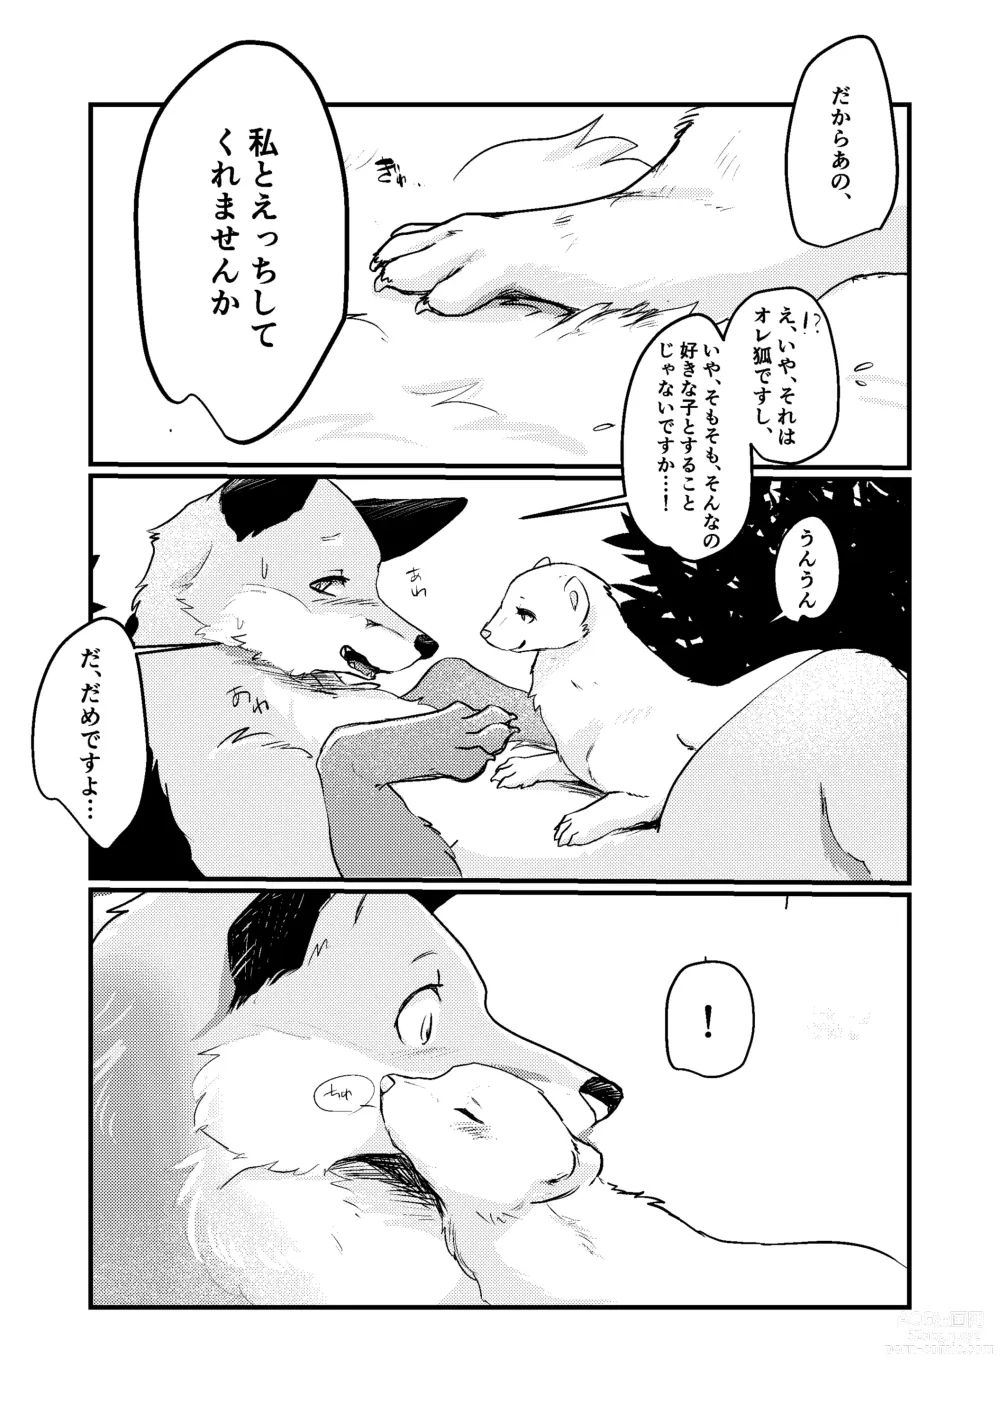 Page 6 of doujinshi Haru no nioi ni sasowarete (uncensored)